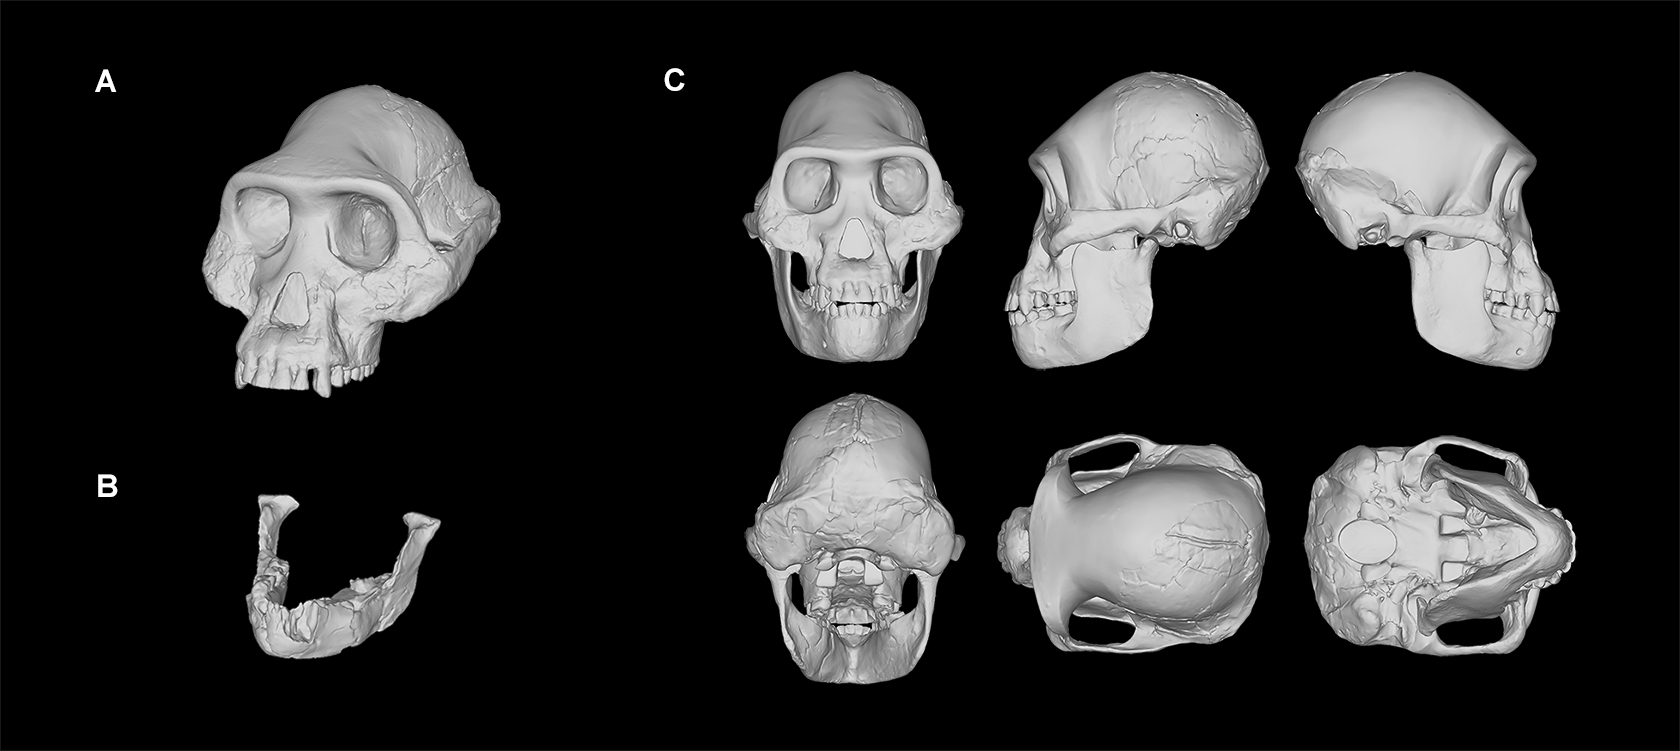 Modelo digital del cráneo masculino compuesto del Australopithecus afarensi reconstruido en Kimbel et al. (1984) y Kimbel y White (1988) (A). Mandíbula perteneciente al esqueleto parcial AL 288-1 (Lucy) (B). Reconstrucción del cráneo de Lucy que se produjo escalando el cráneo masculino para ajustarlo a la mandíbula AL 288-1 (C). Crédito de la imagen: R. Campbell, G. Vinas, M. Henneberg, R. Diogo